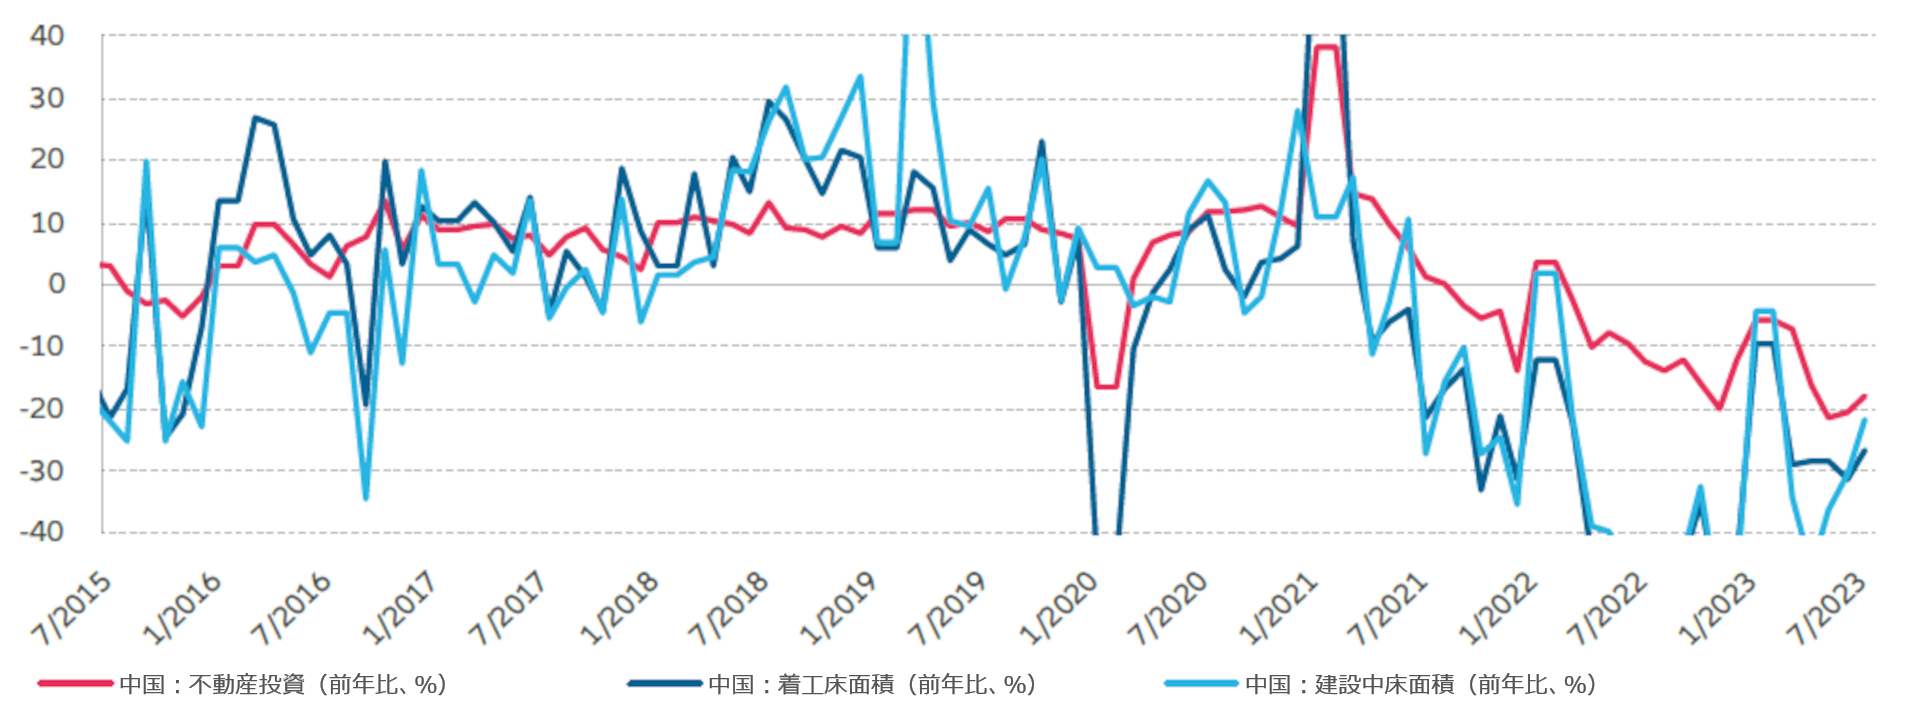 図表1：中国不動産市場の動きは劇的に鈍化